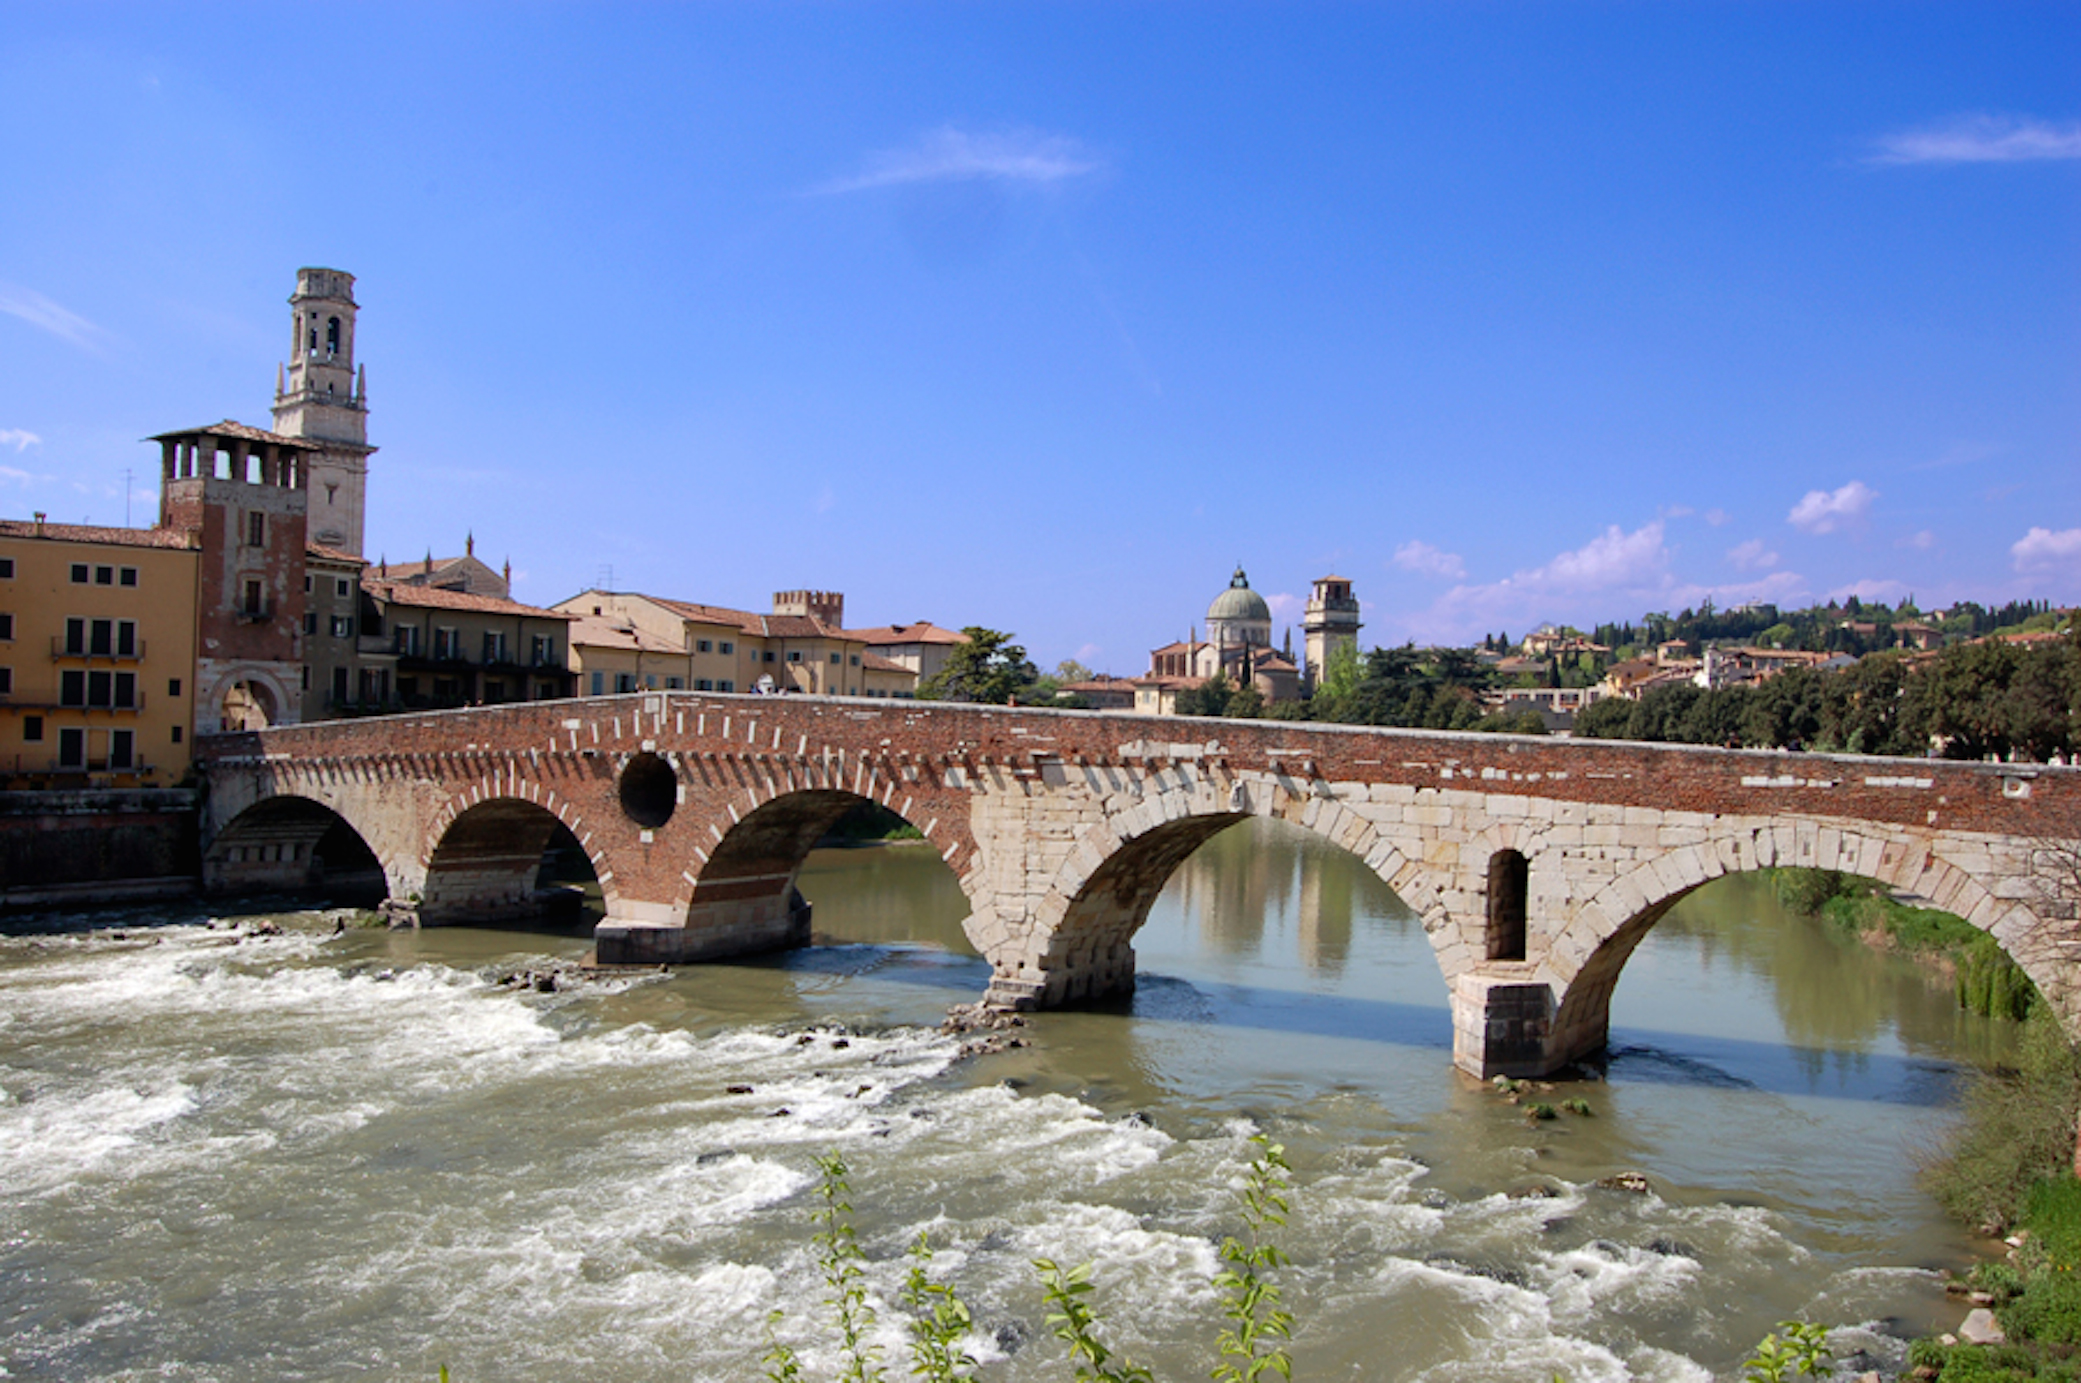 Verona bridge of stones